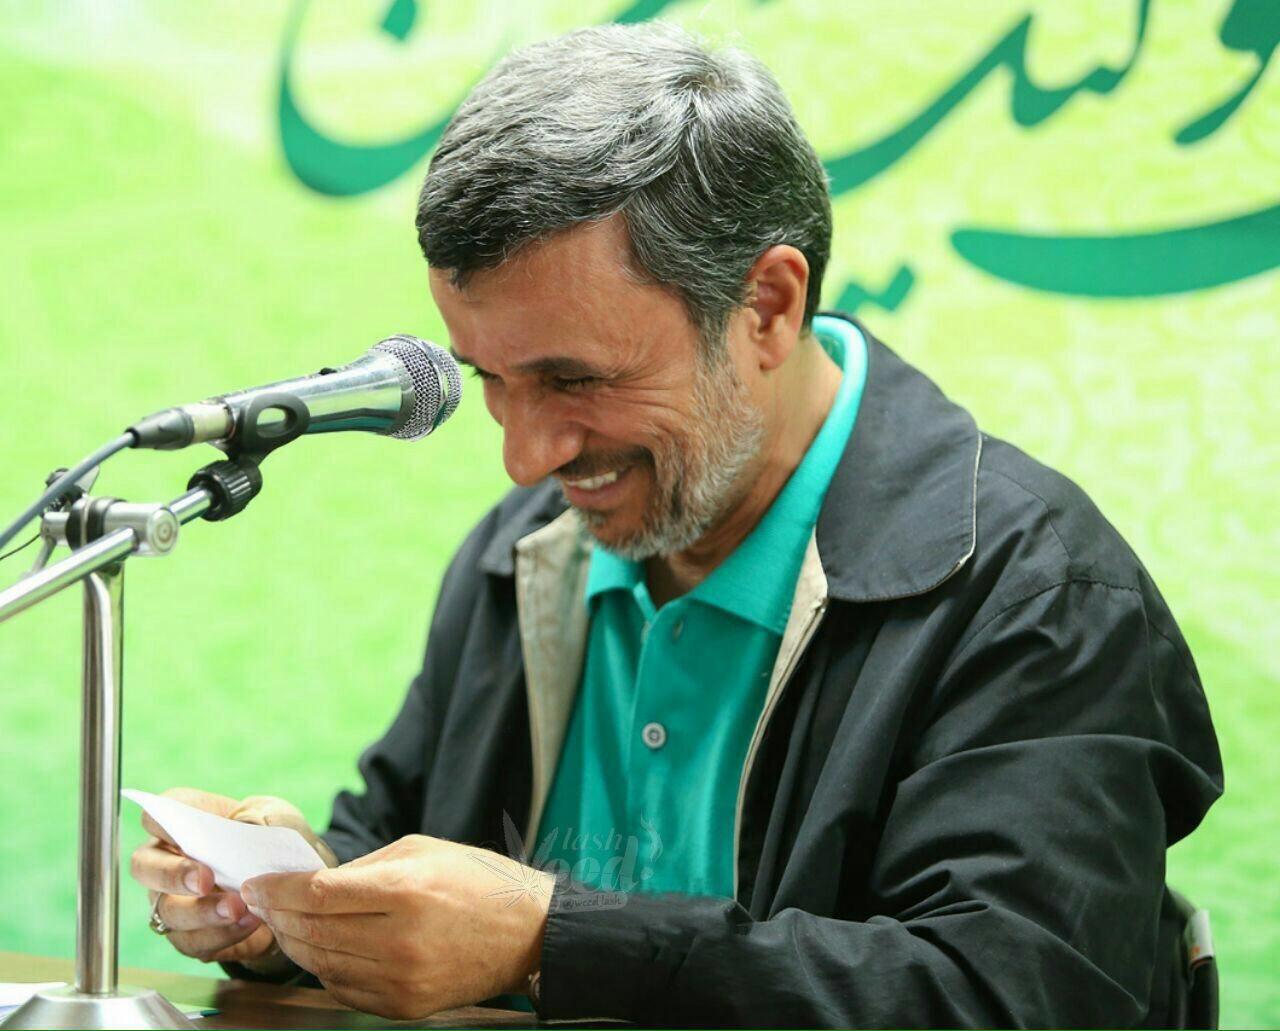 احمدی نژاد reza_netboy